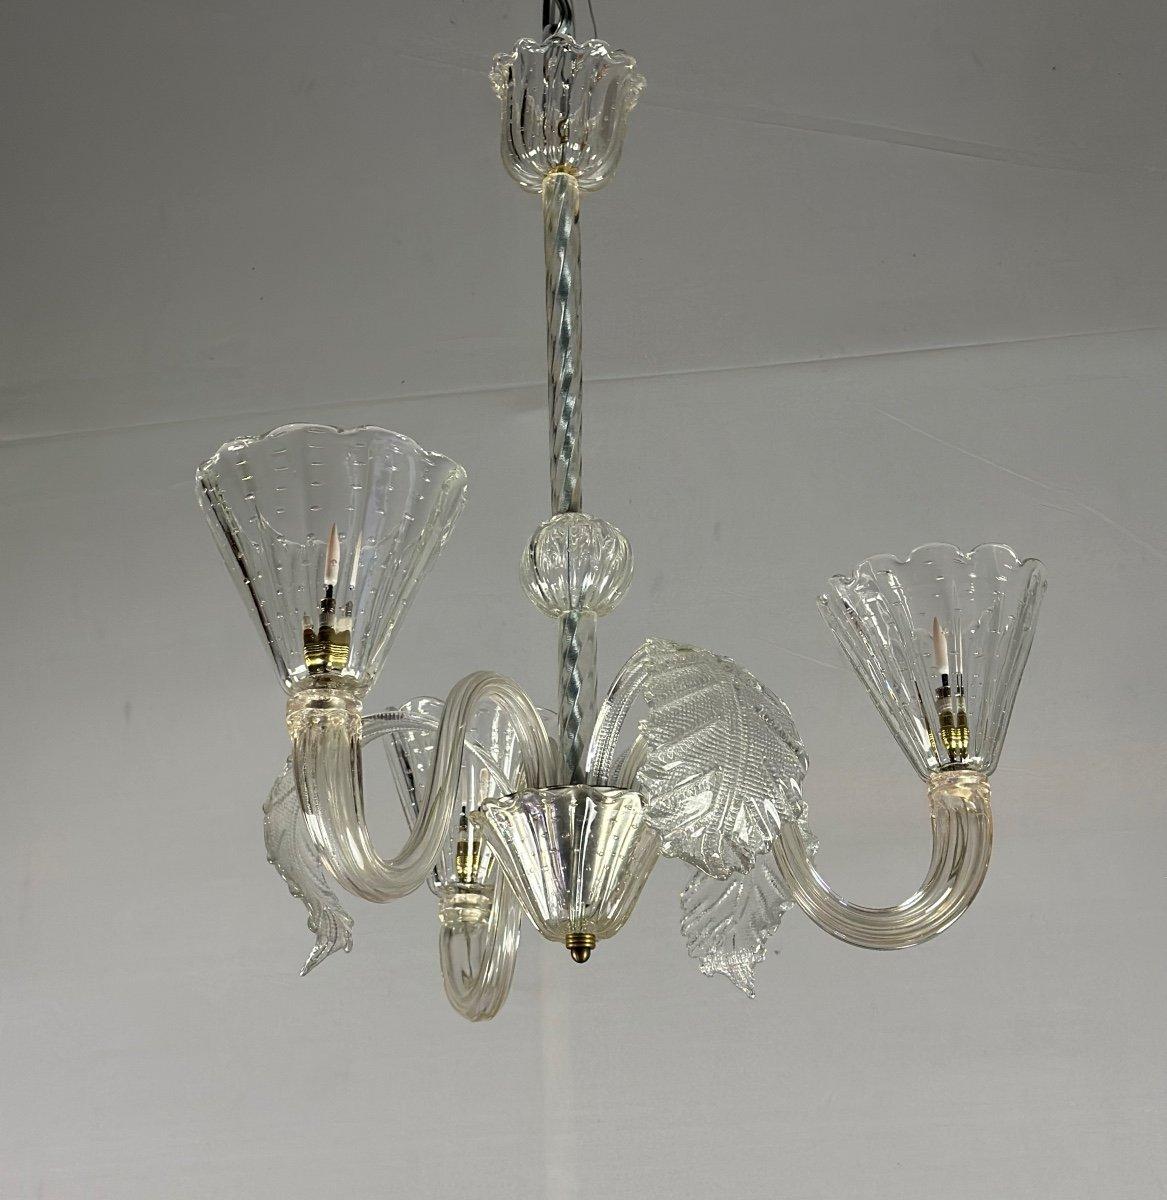 Venezianischer Kronleuchter aus Murano-Glas, 3 Arme mit Licht, neue Elektrifizierung